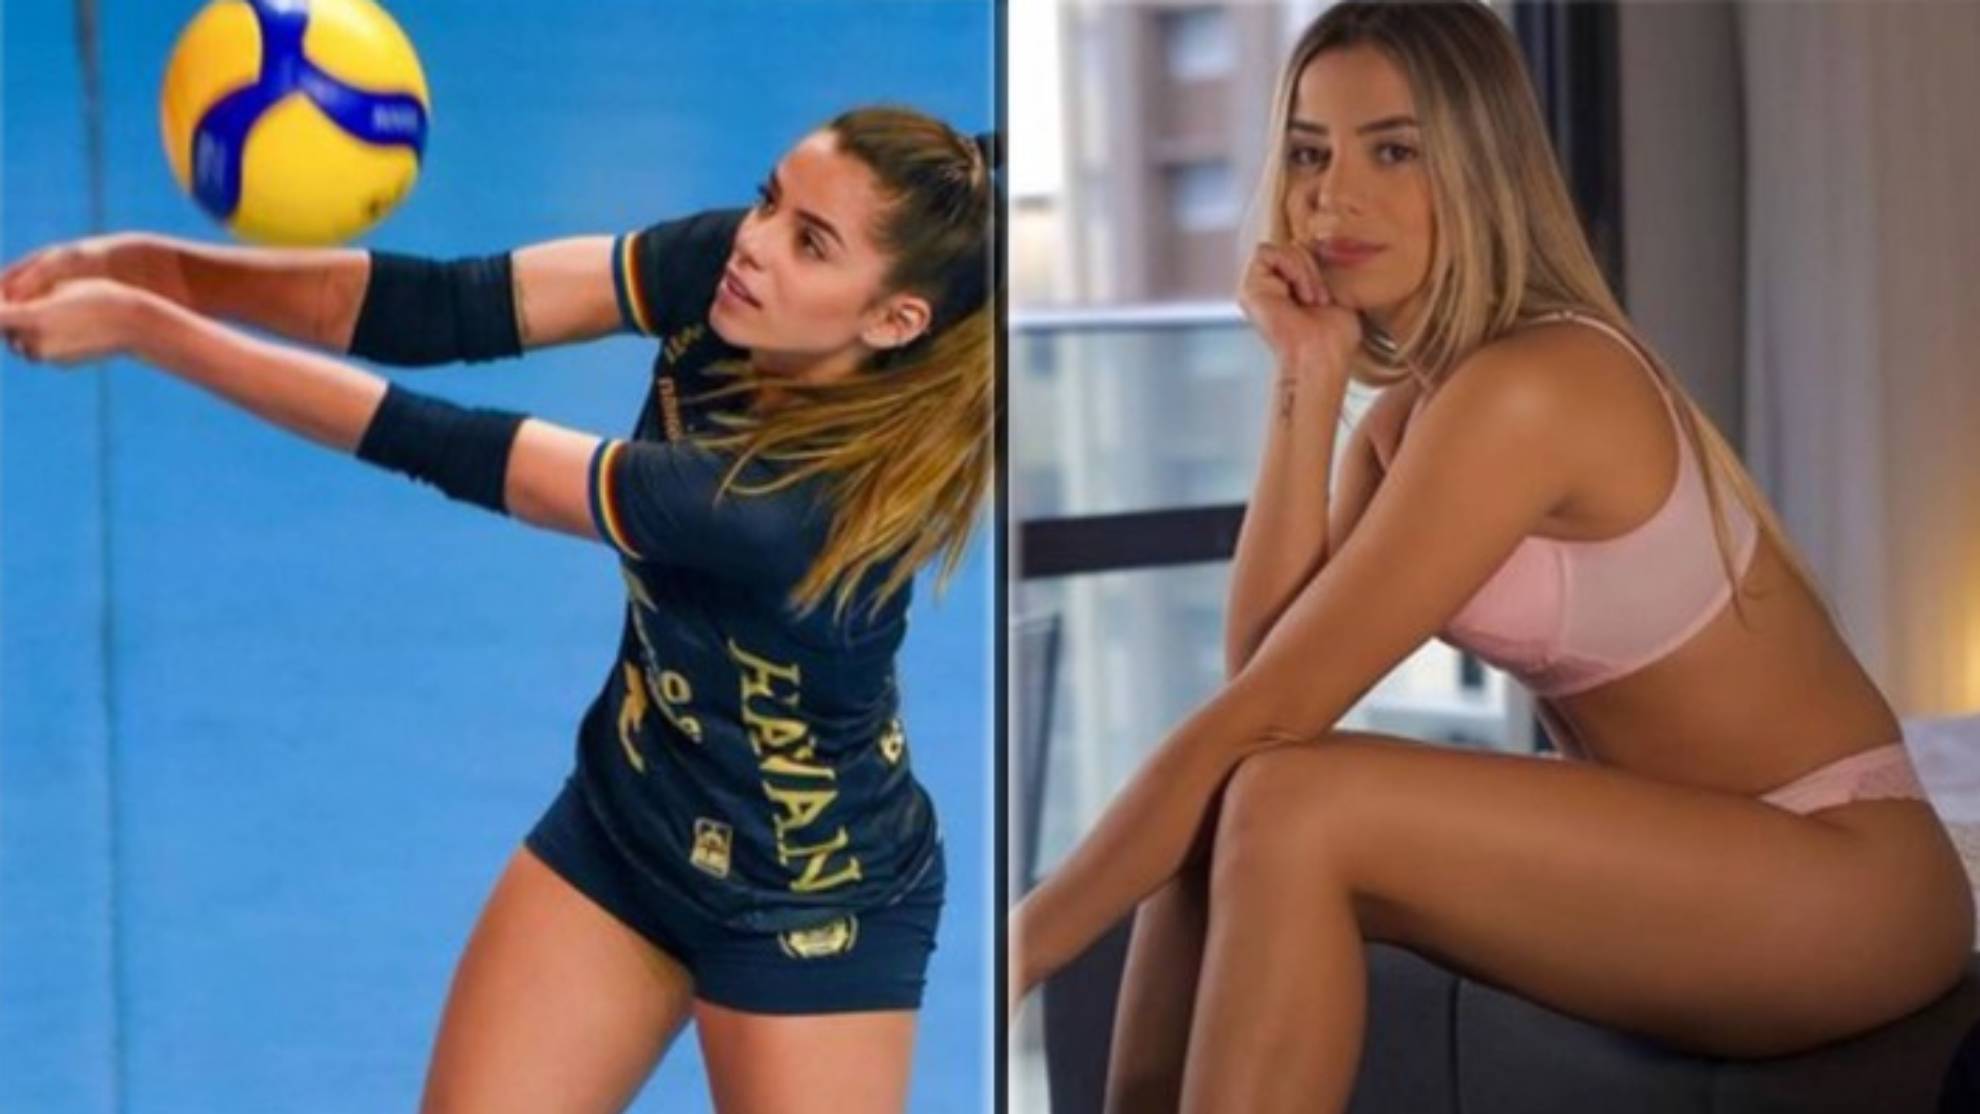 Key Alves es la jugadora de voleibol profesional con más seguidores en Instagram con 2,2 millones de 'followers', superando a la turca Zehra Günes (2,1). La líbero del Osasco, que es internacional con Brasil, también triunfa como modelo. Key Alves tiene las cosas muy claras: "Mi prioridad es el voleibol".